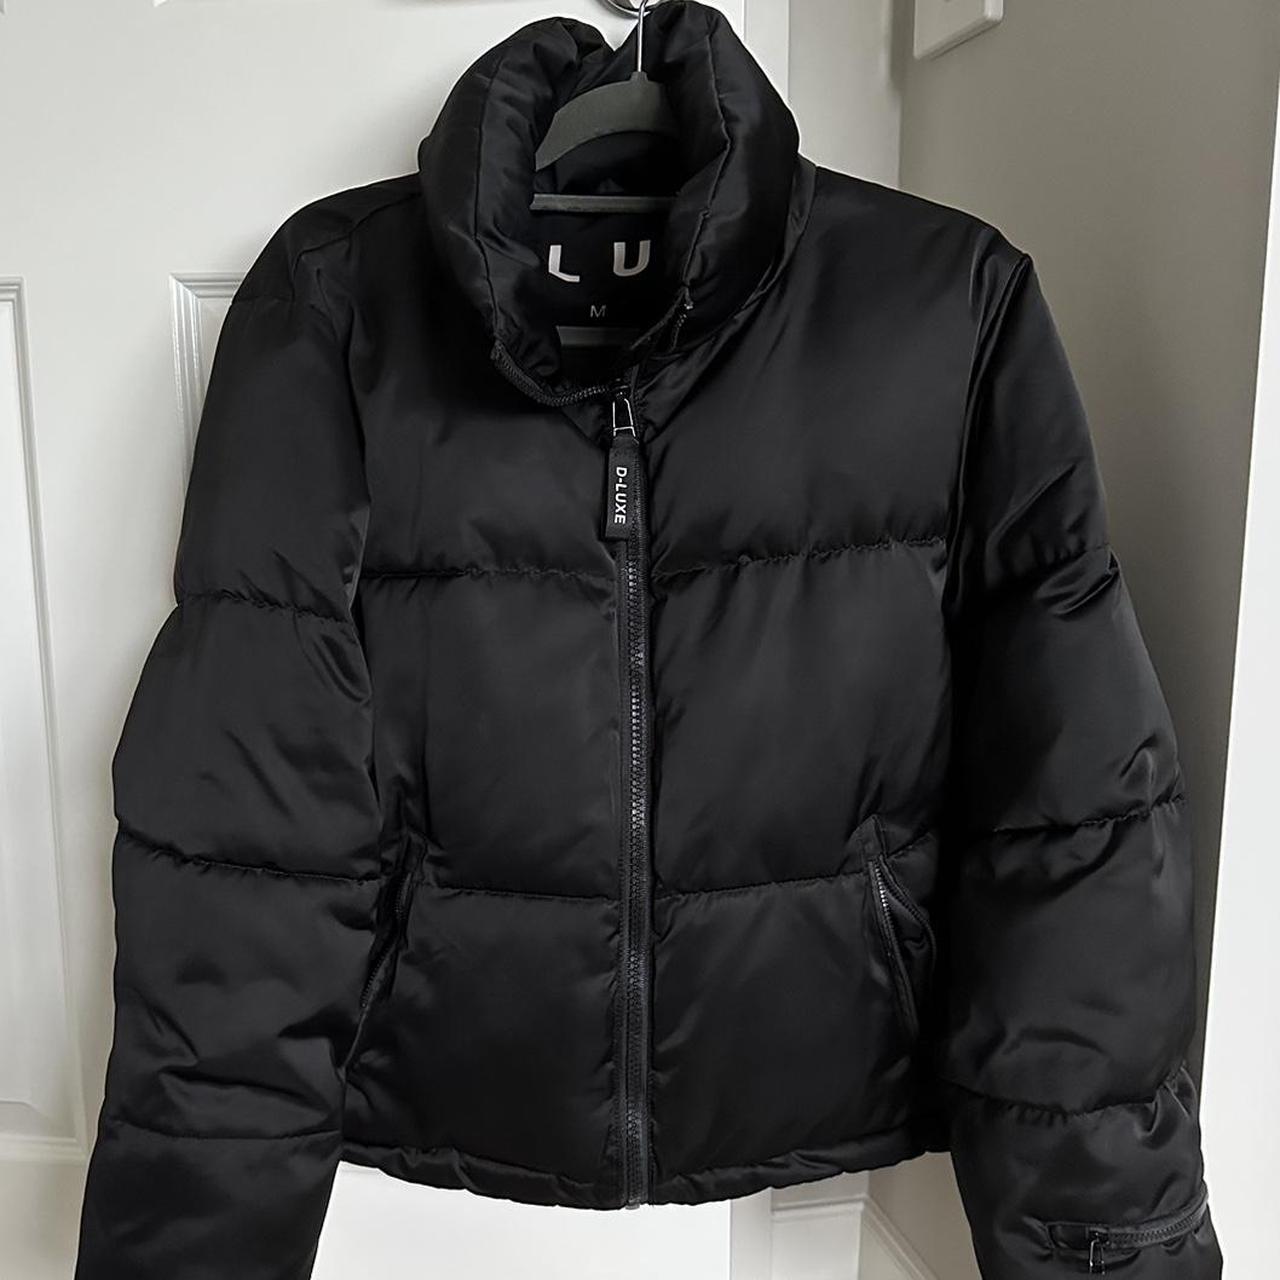 Decjuba D-Luxe short puffer jacket Super warm... - Depop